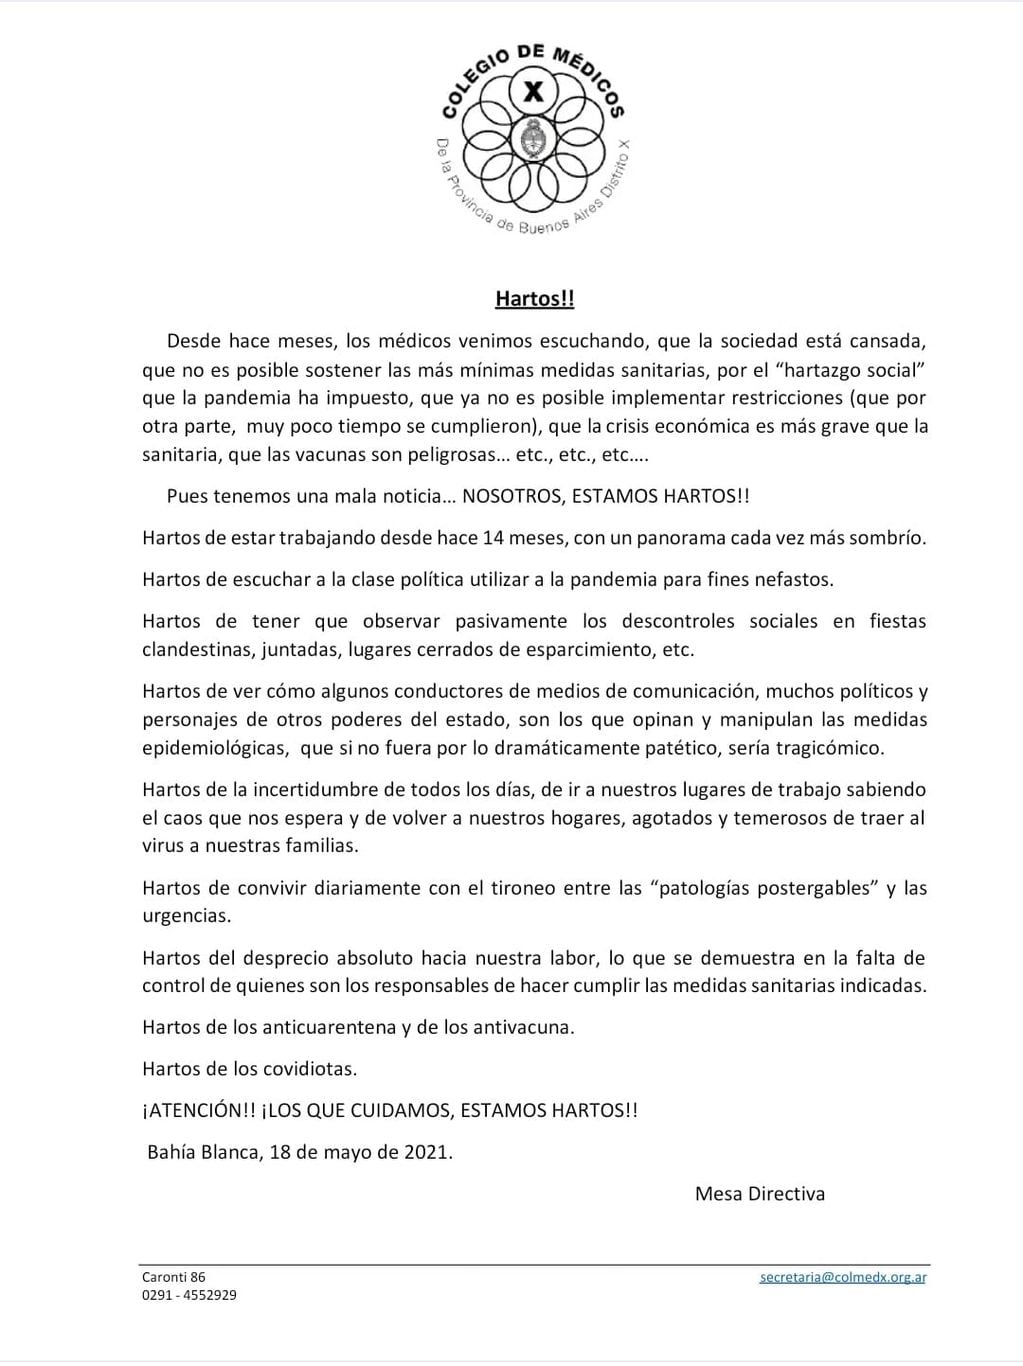 El Colegio de Médicos de la Provincia de Buenos Aires Distrito X emitió un duro comunicado dirigido a la casta política y a la clase ciudadana de Bahía Blanca